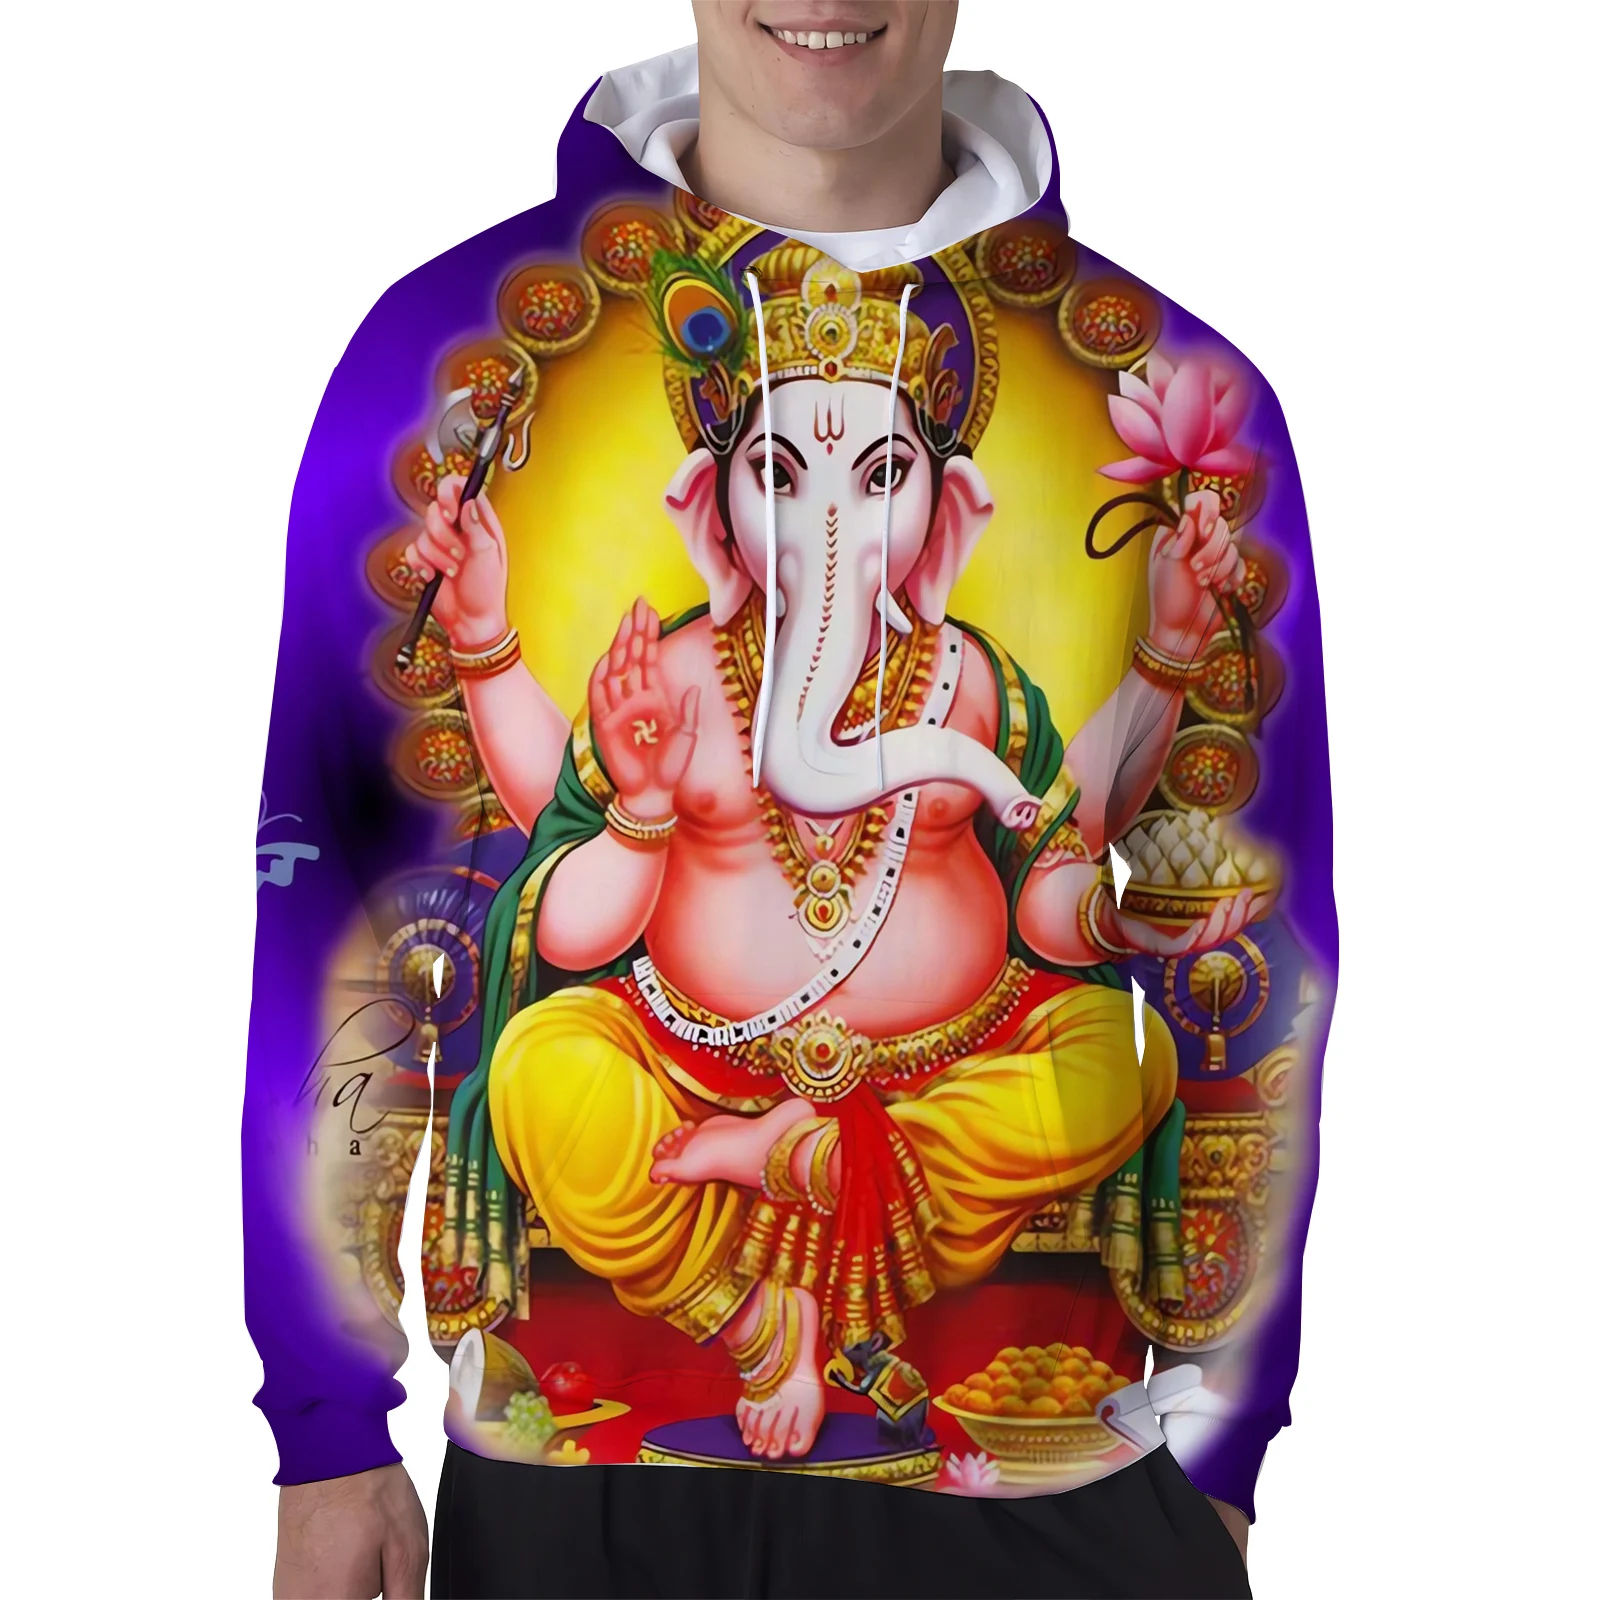 

HX Ganesha спортивный костюм Индийский Бог Мода 3D Печатный жилет футболки толстовки наборы мужская женская одежда костюмы Прямая поставка